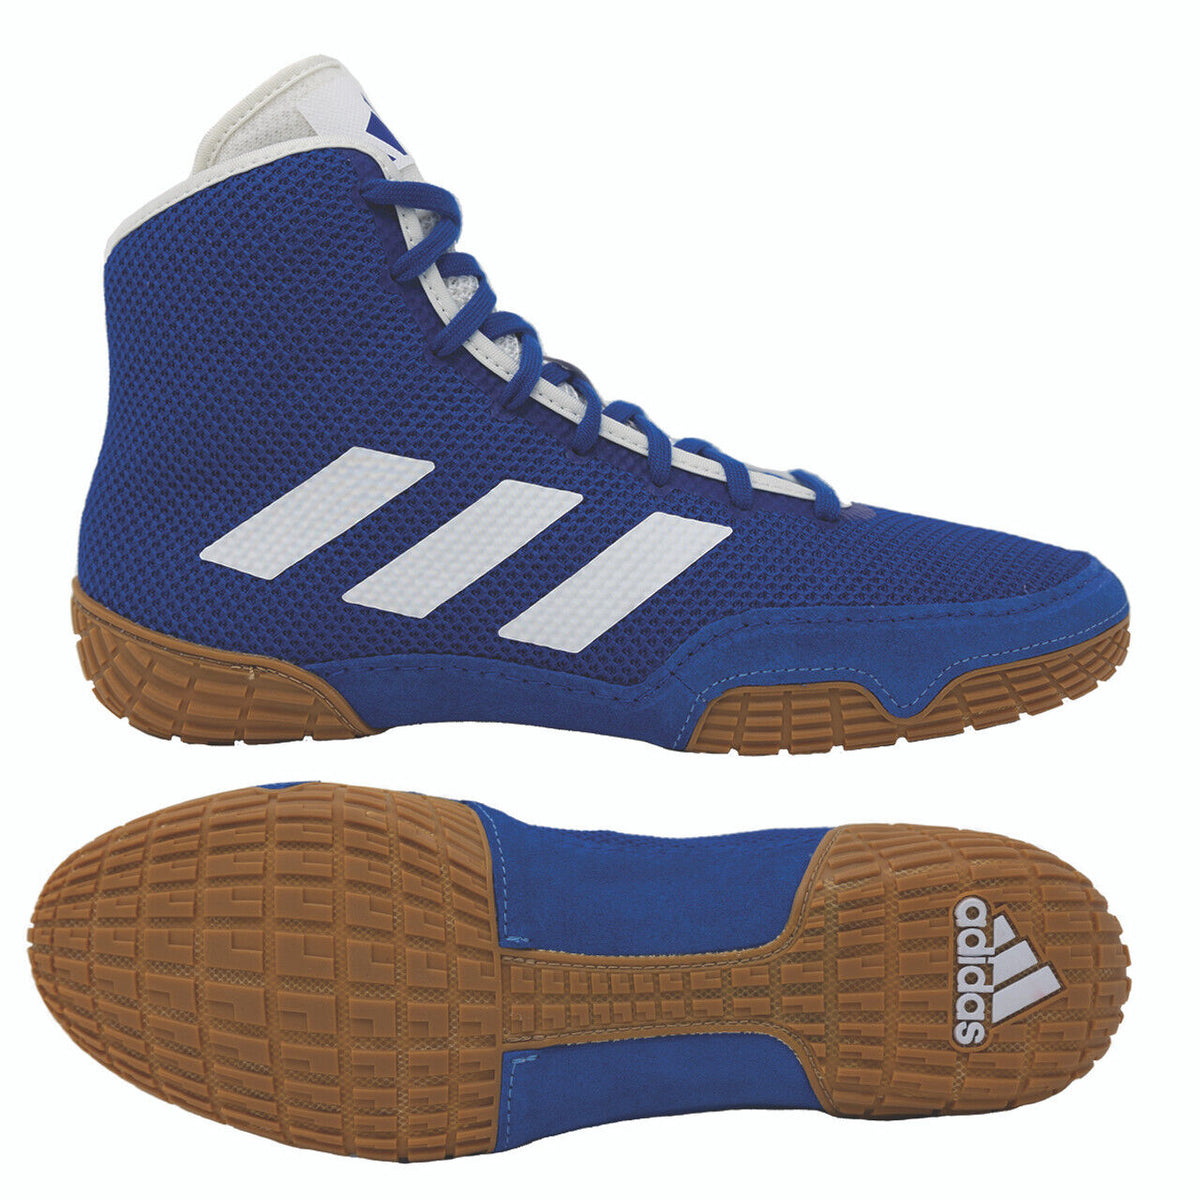 Les chaussures de lutte Adidas Tech-Fall de couleur bleue. Maintenant au meilleur prix chez Phantom Athletics . Les chaussures de lutte Adidas sont parmi les chaussures les plus recherchées parmi les lutteurs du monde entier car elles offrent une qualité supérieure associée à un confort ultime. La semelle robuste offre une traction sur le tapis de lutte. 